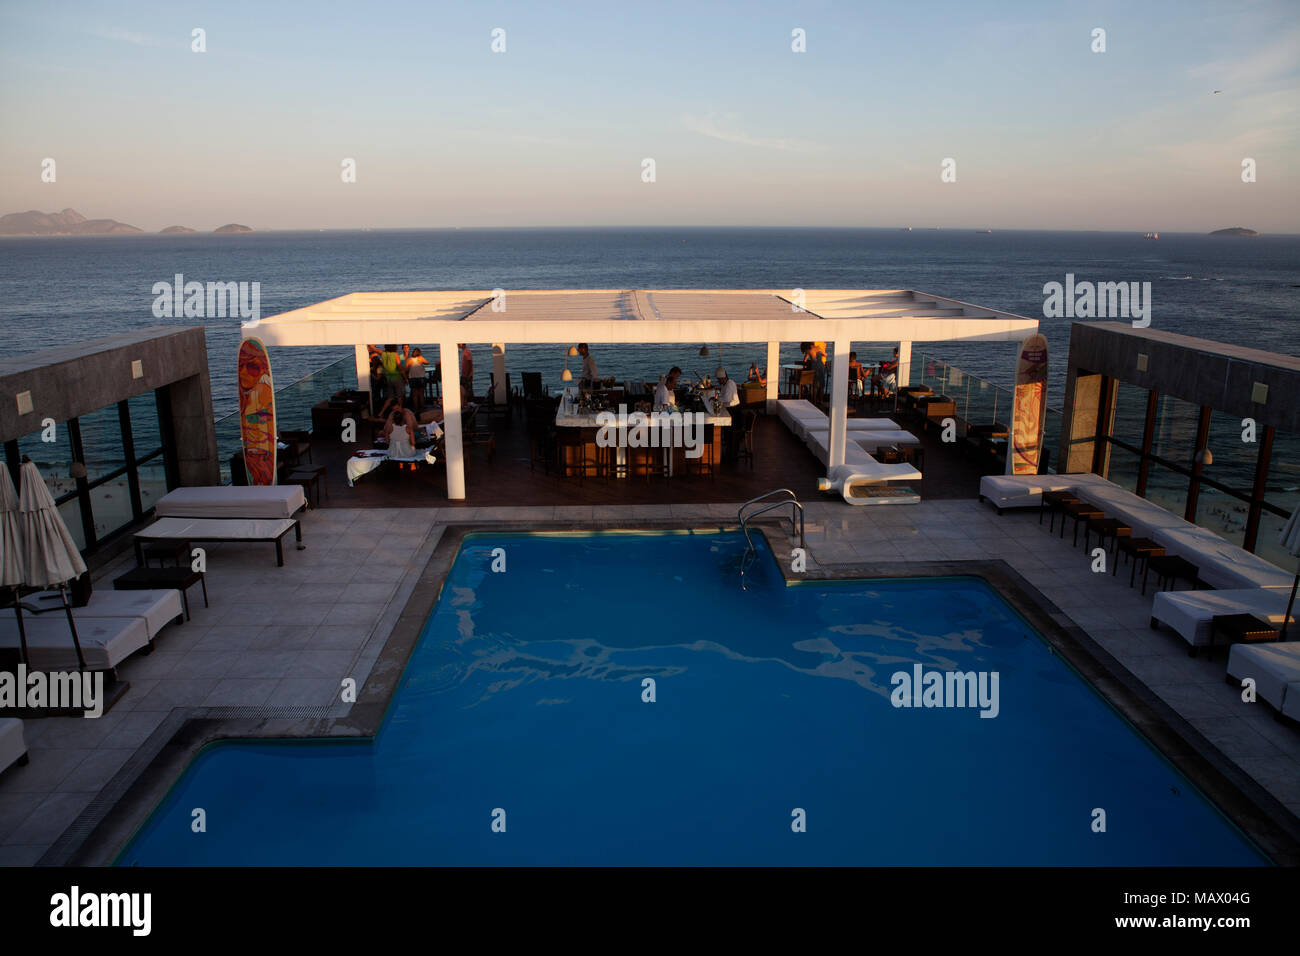 Assunto: Vista da piscina do hotel Pestana na praia de copacabana Data: 15/02/13 Local: Rio de Janeiro, RJ Autor: Eduardo Zappia Stock Photo